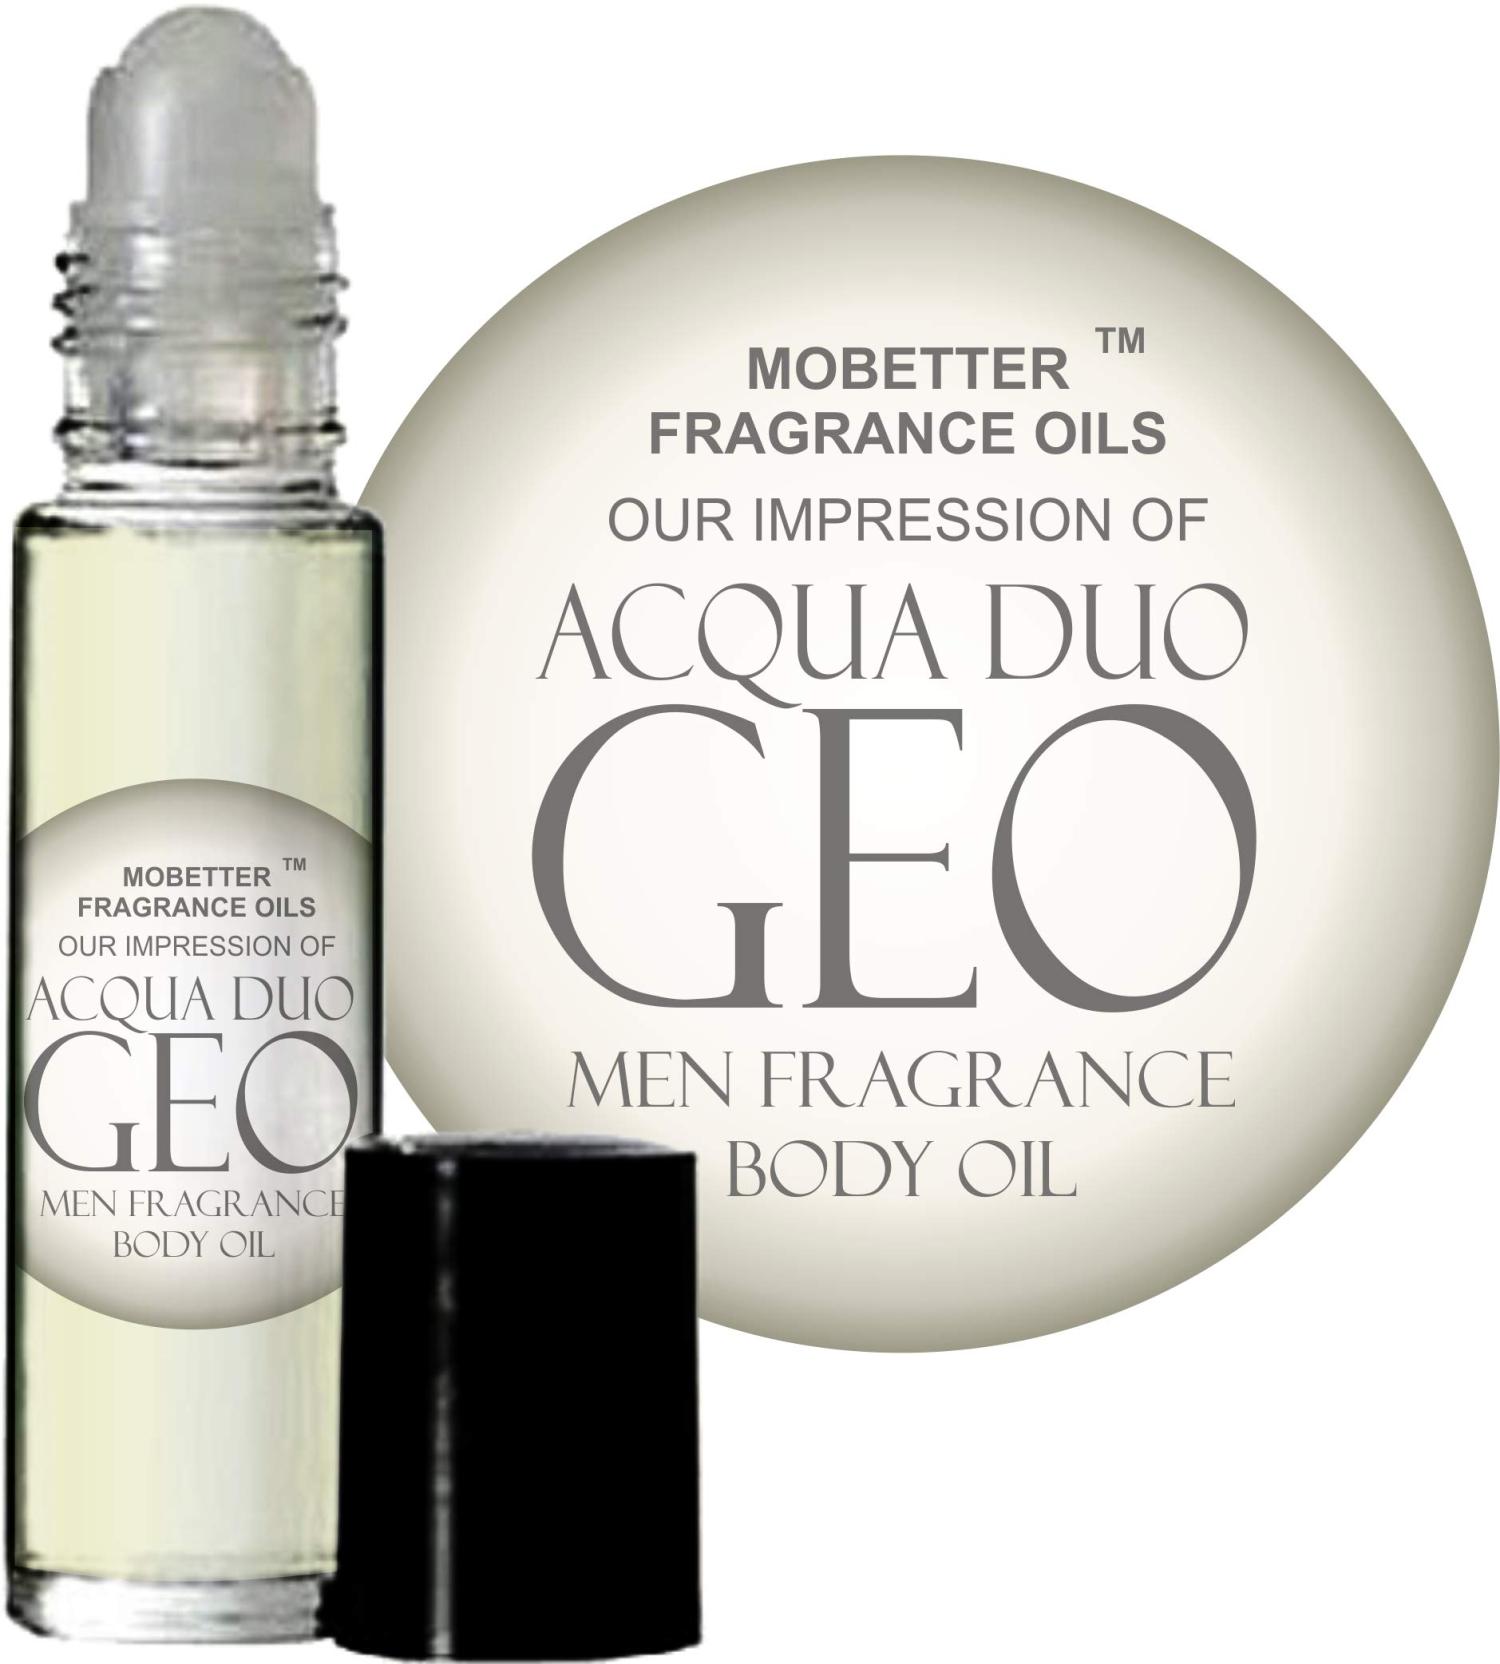 Men's Fragrance Body Oils